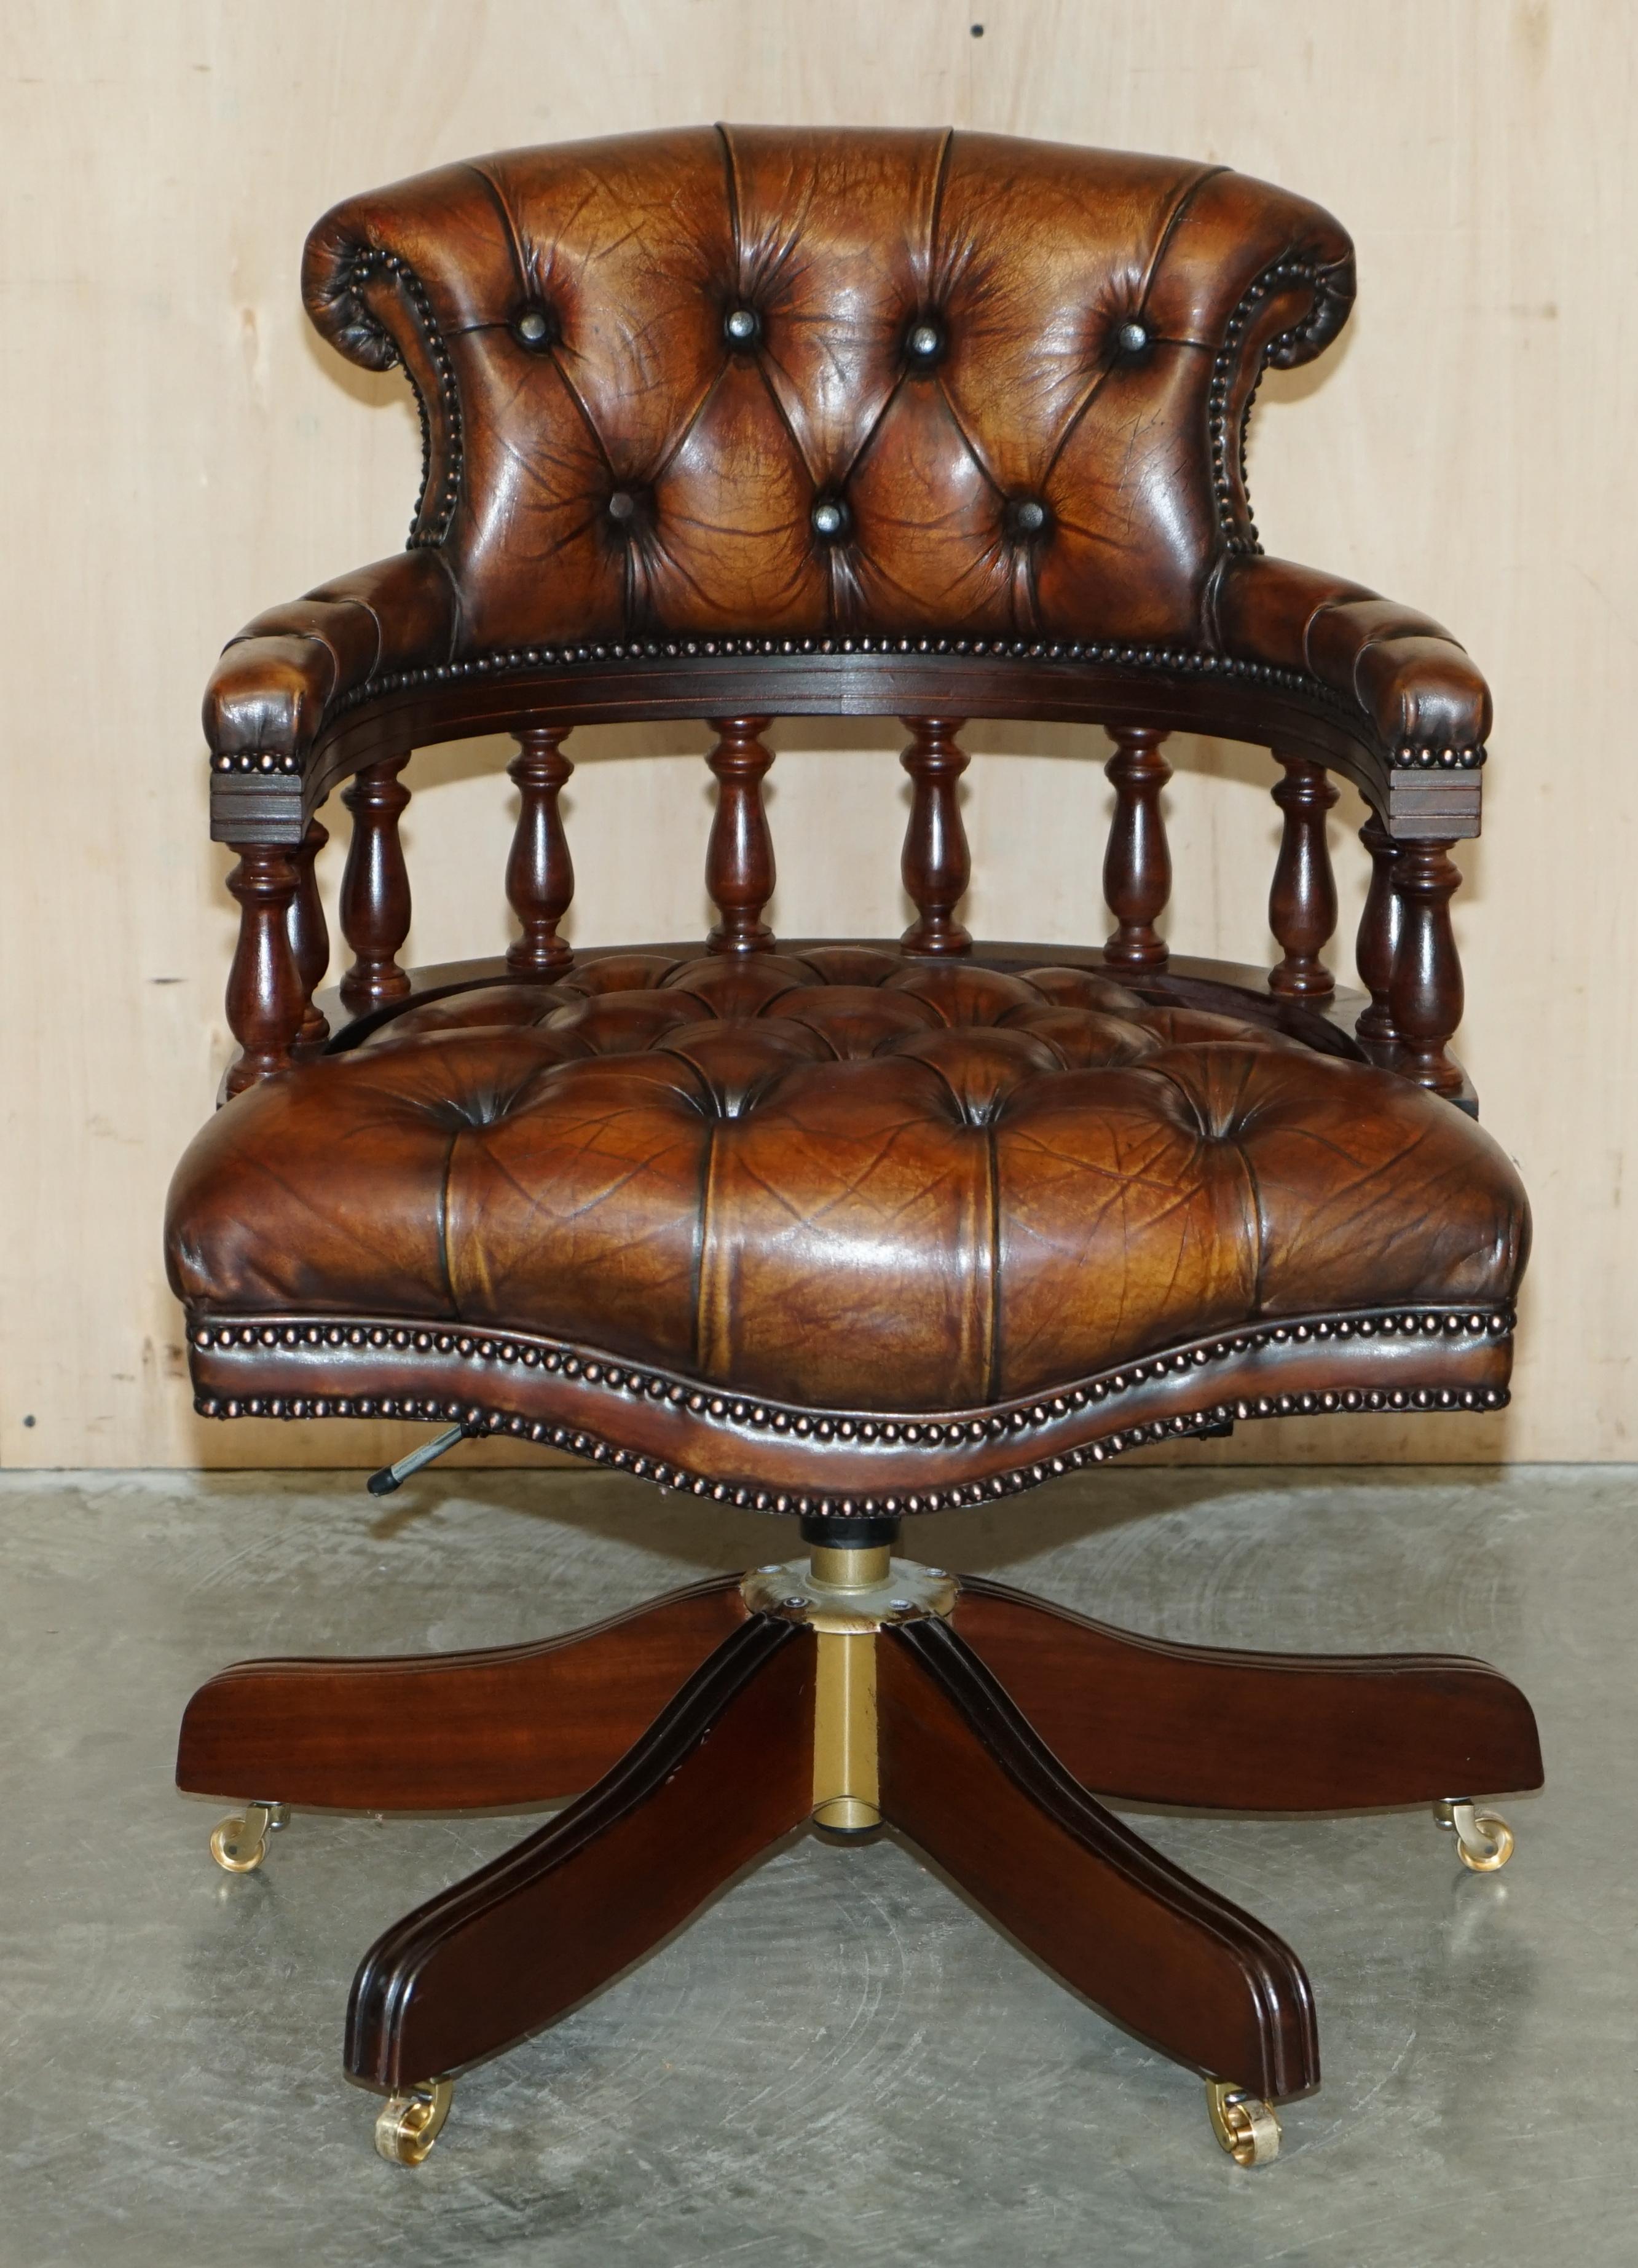 Royal House Antiques

The House Antiques a le plaisir d'offrir à la vente cette belle chaise de directeur en cuir marron Chesterfield teint à la main, entièrement restaurée, avec des roulettes anglaises en laiton massif. 

Veuillez noter que les